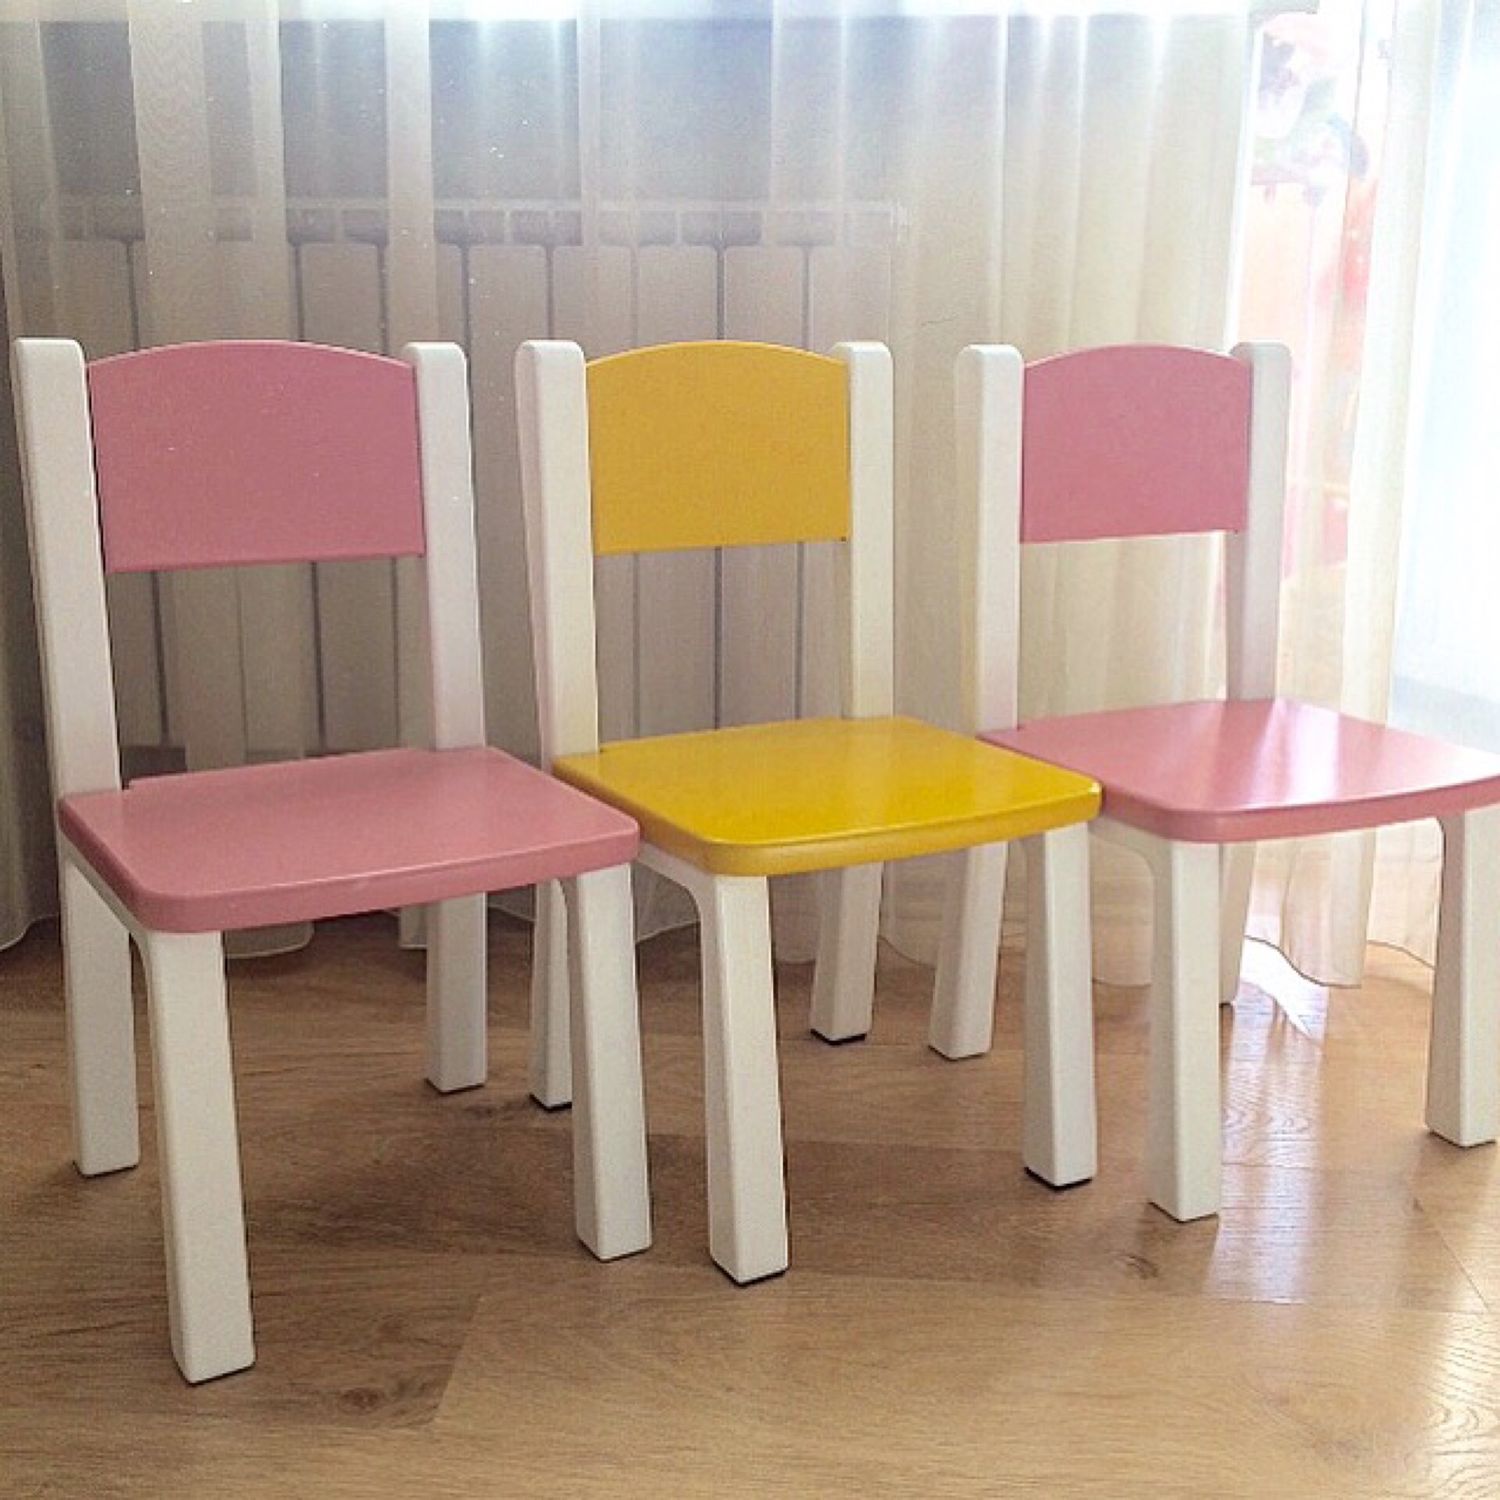 стульчики и столы для детского сада